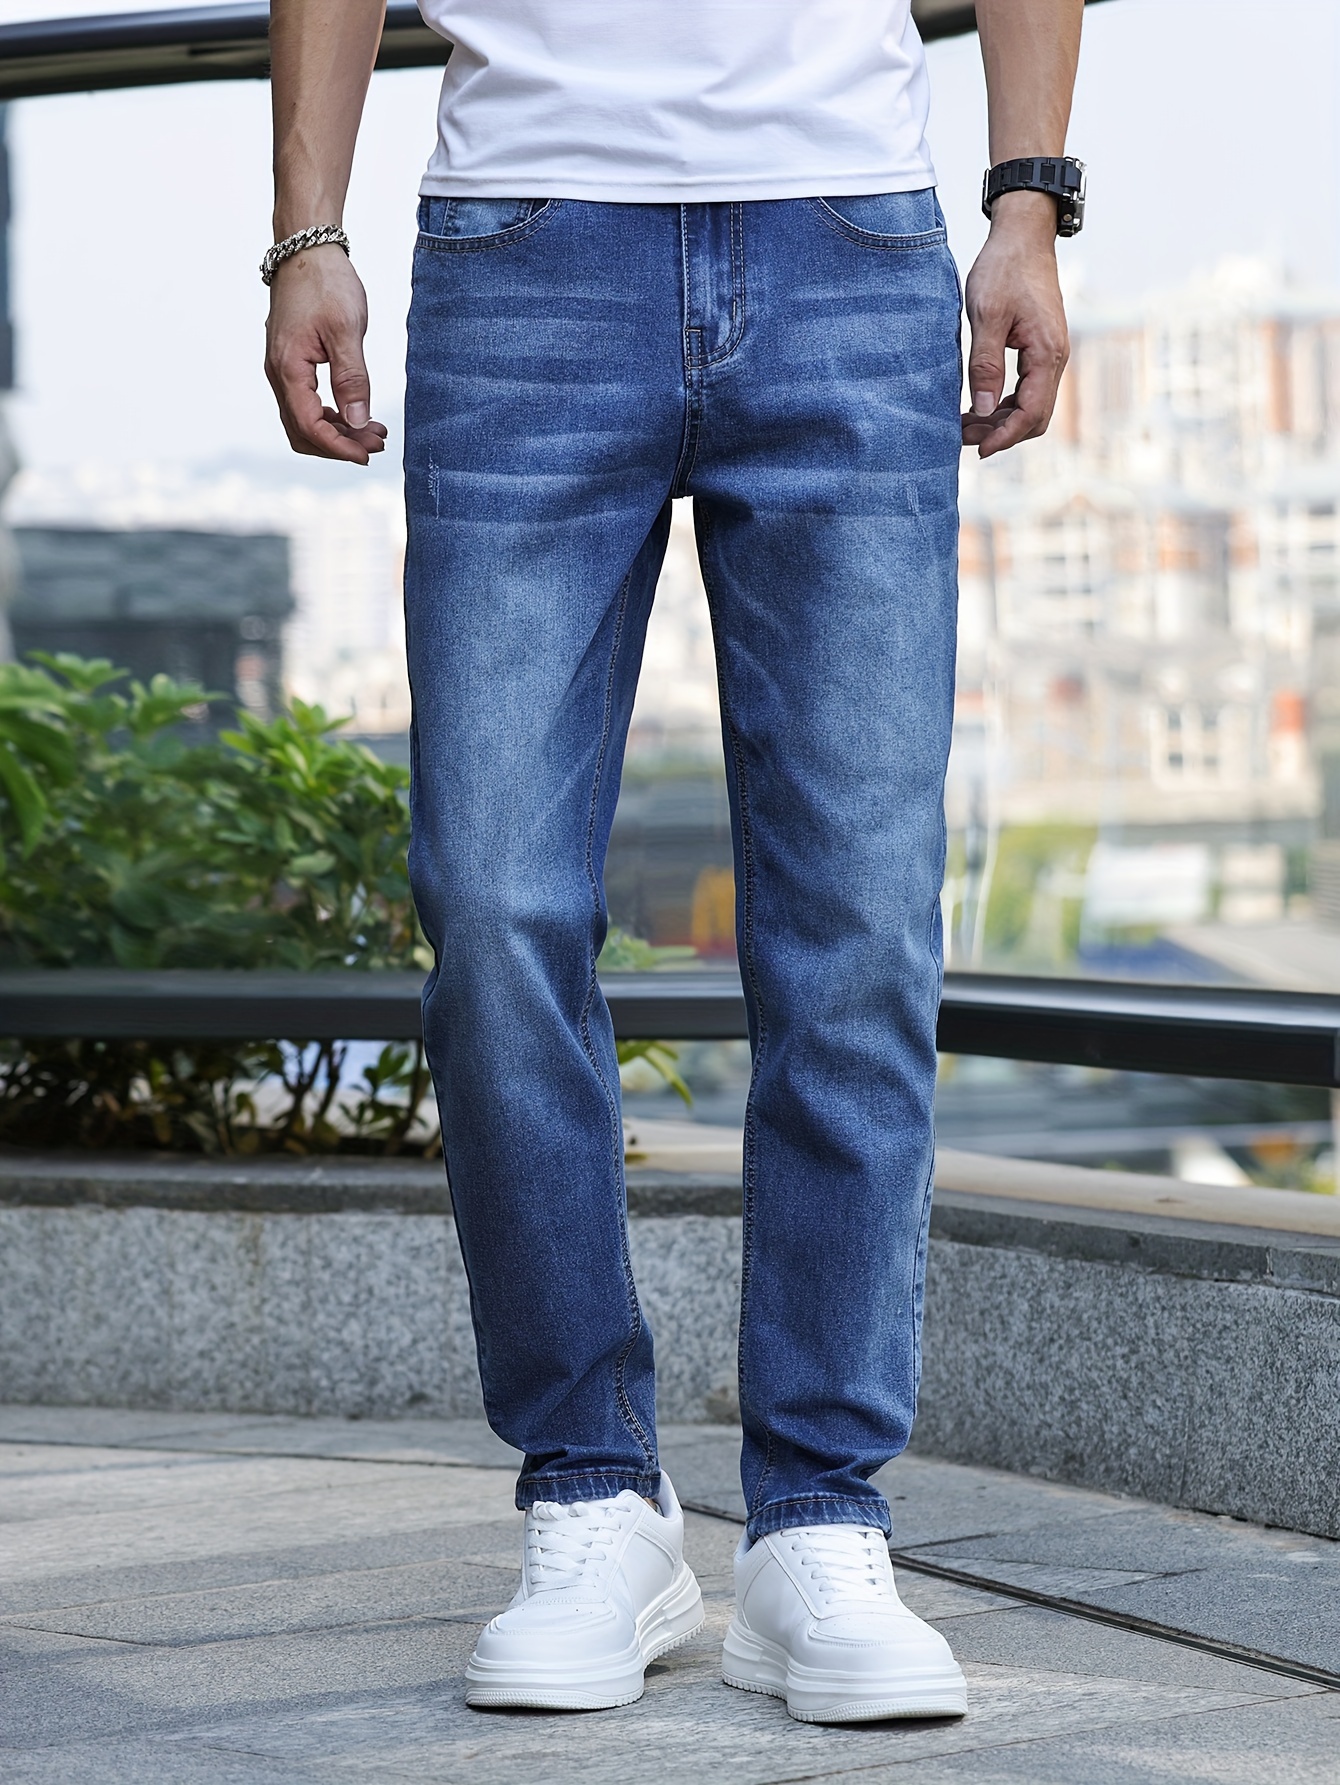 Pantalones Vaqueros Elásticos Para Hombre Jeans De Negocios De Moda Casial  Lujo